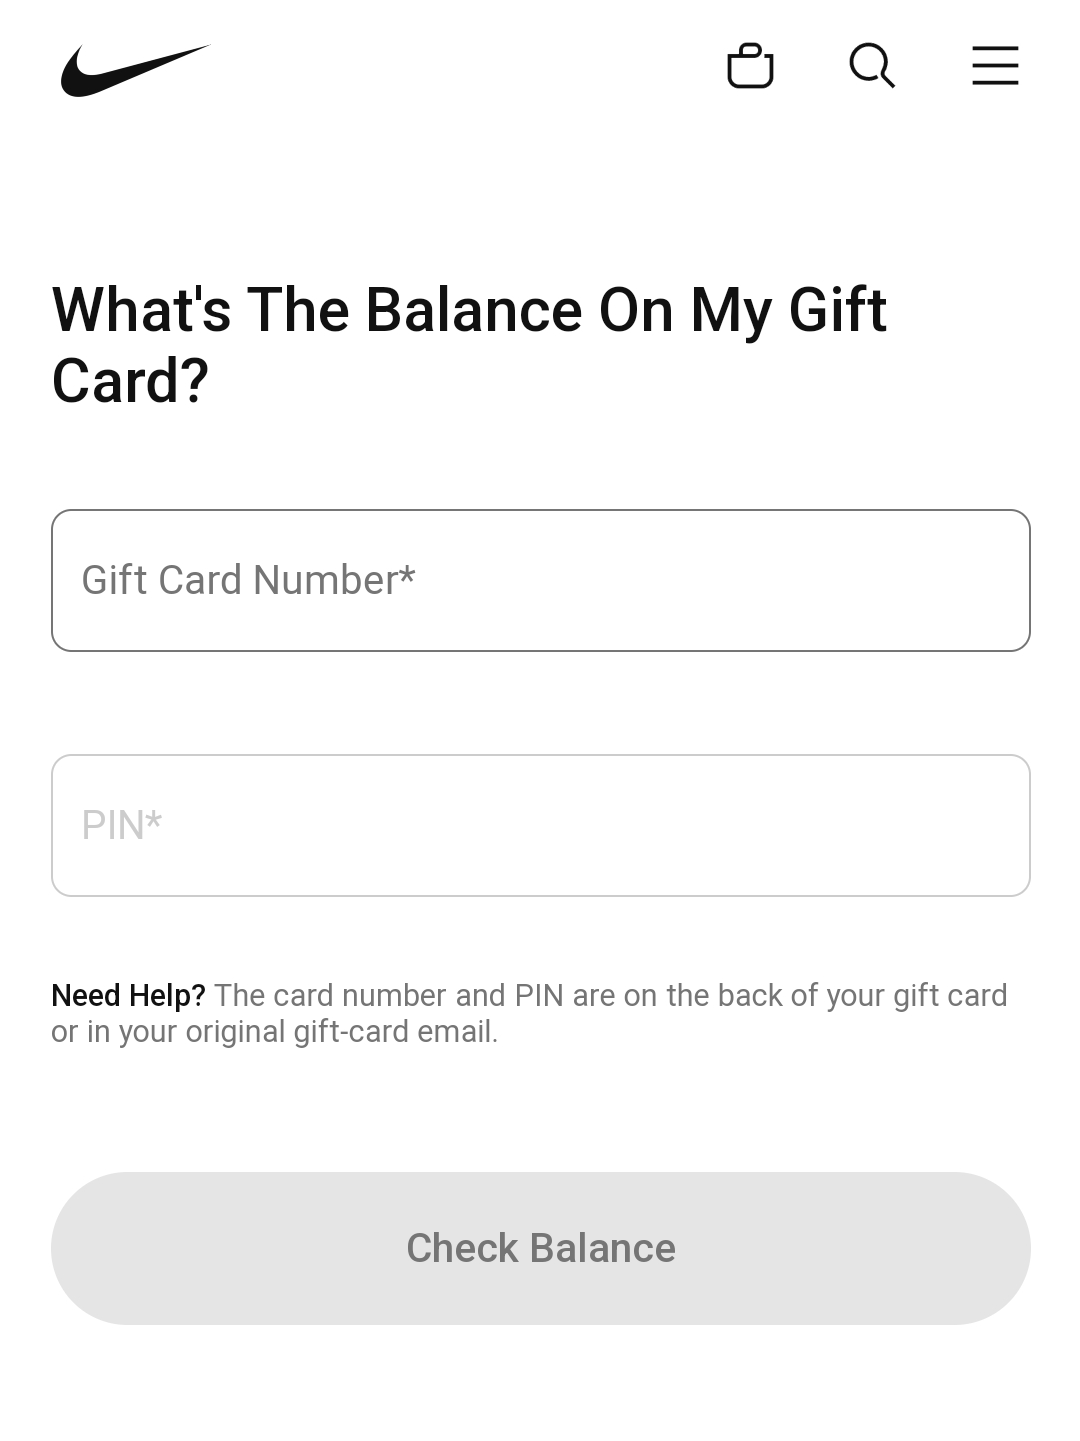 Nike gift card balance